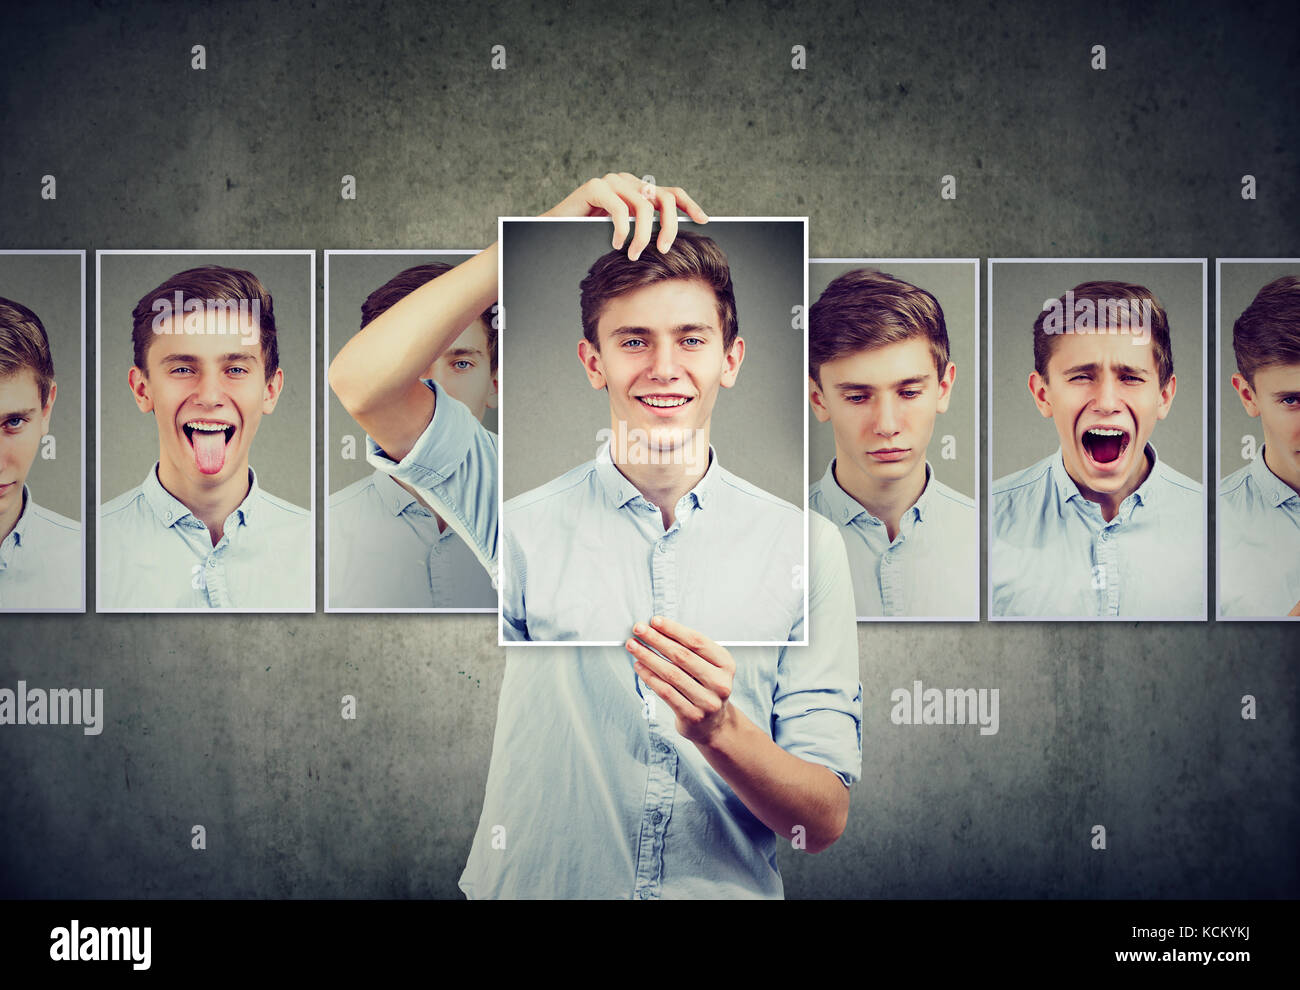 Maskierte mann Jugendlicher verschiedene Emotionen ausdrücken Stockfoto